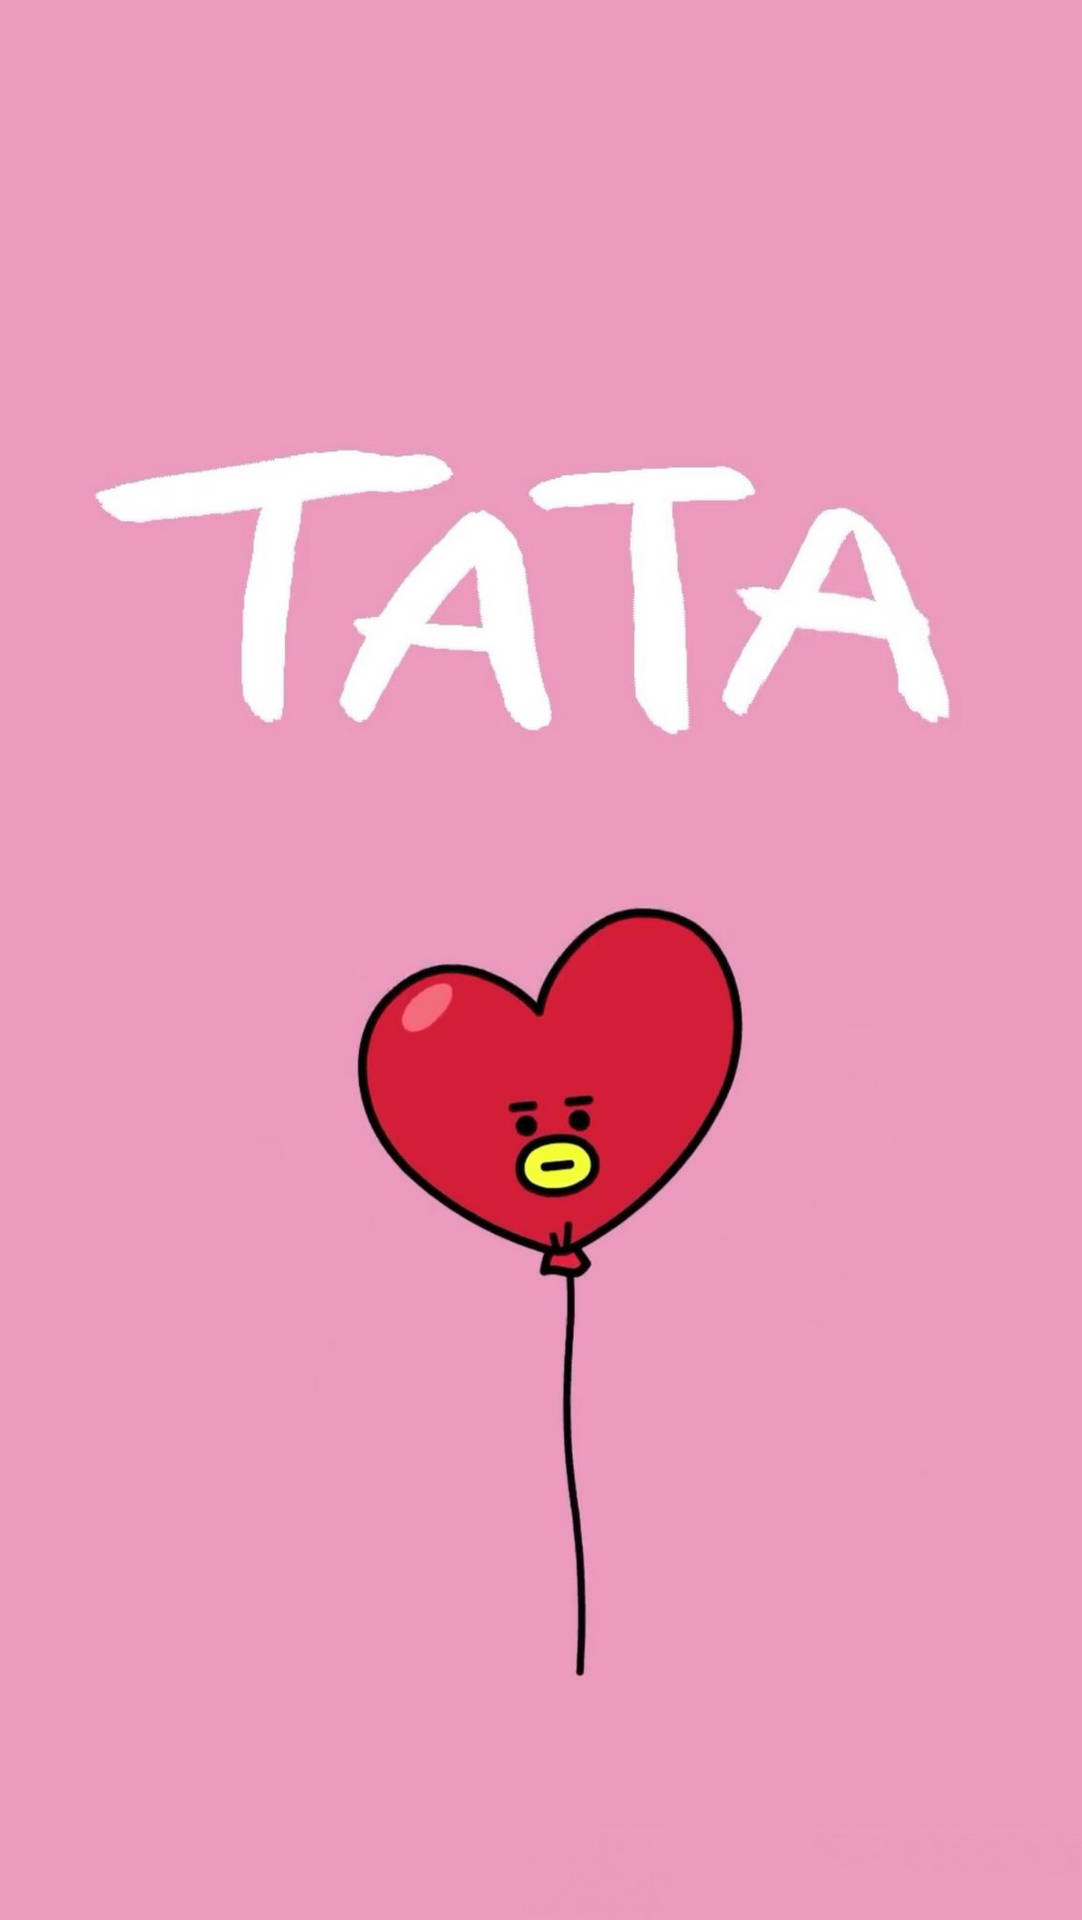 Bt21 Tata Balloon Background